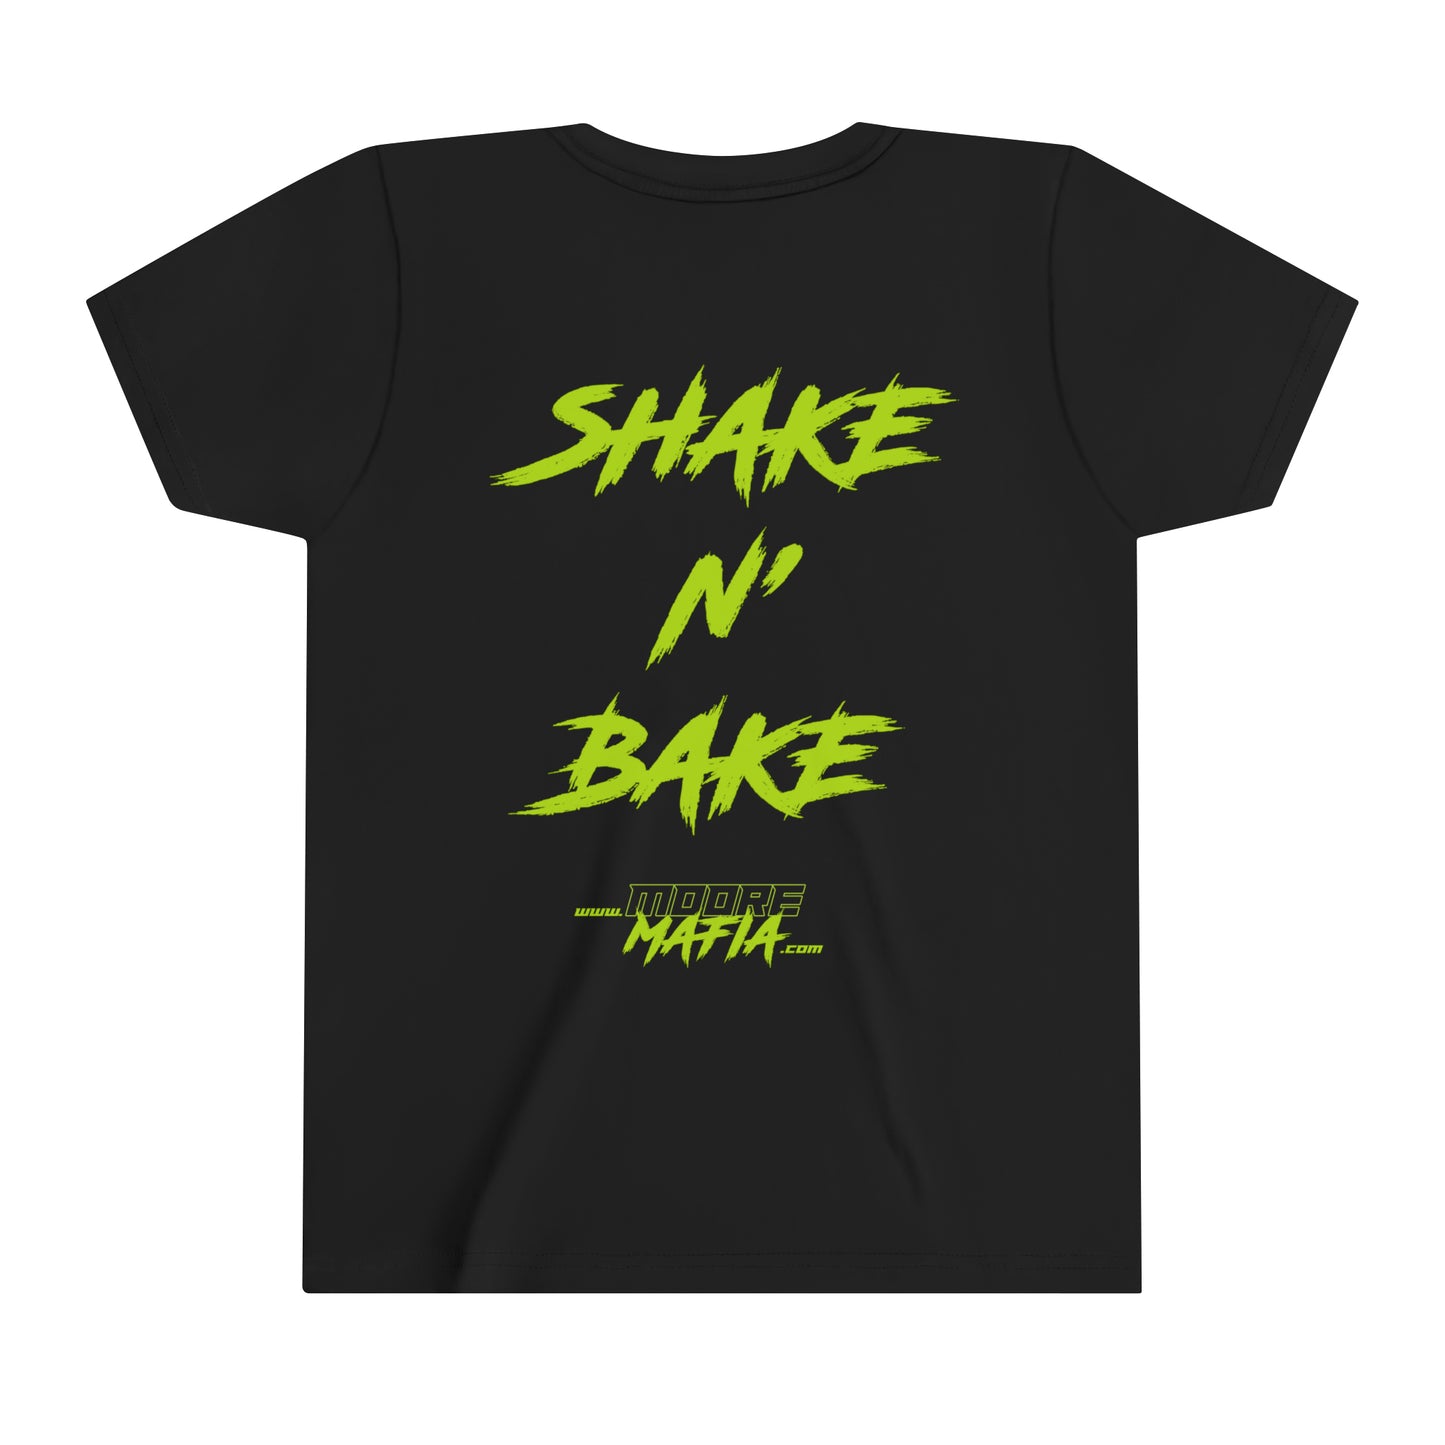 Shake N' Bake Youth Short Sleeve T-Shirt